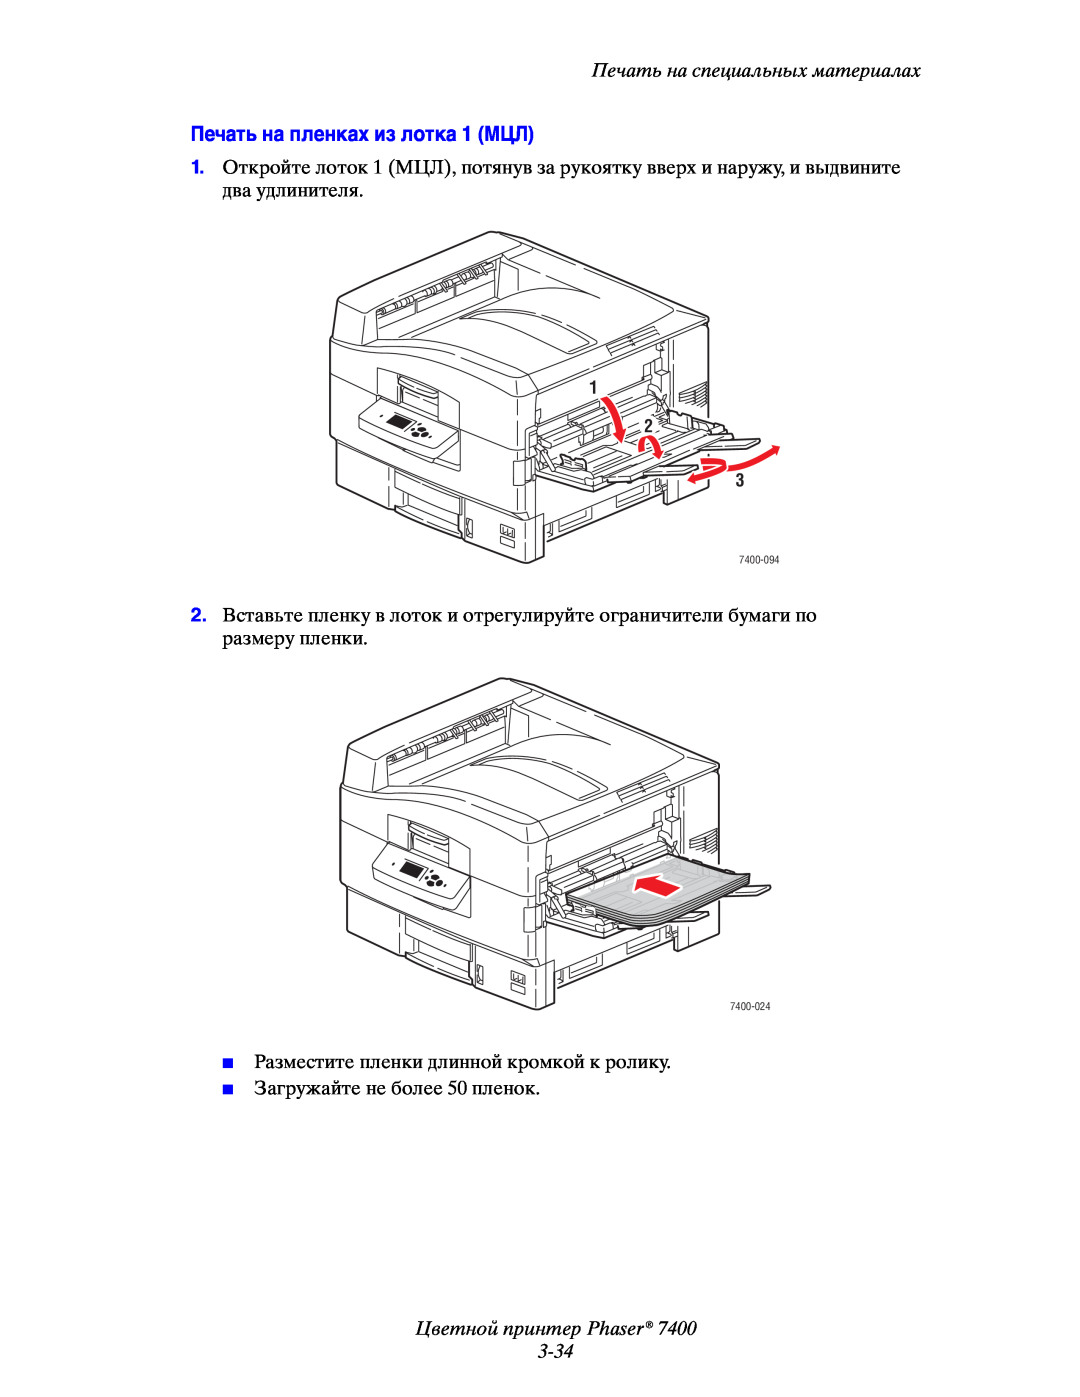 Xerox 7400 manual Печать на пленках из лотка 1 МЦЛ, Цветной принтер Phaser 3-34, Печать на специальных материалах, 1 2 3 